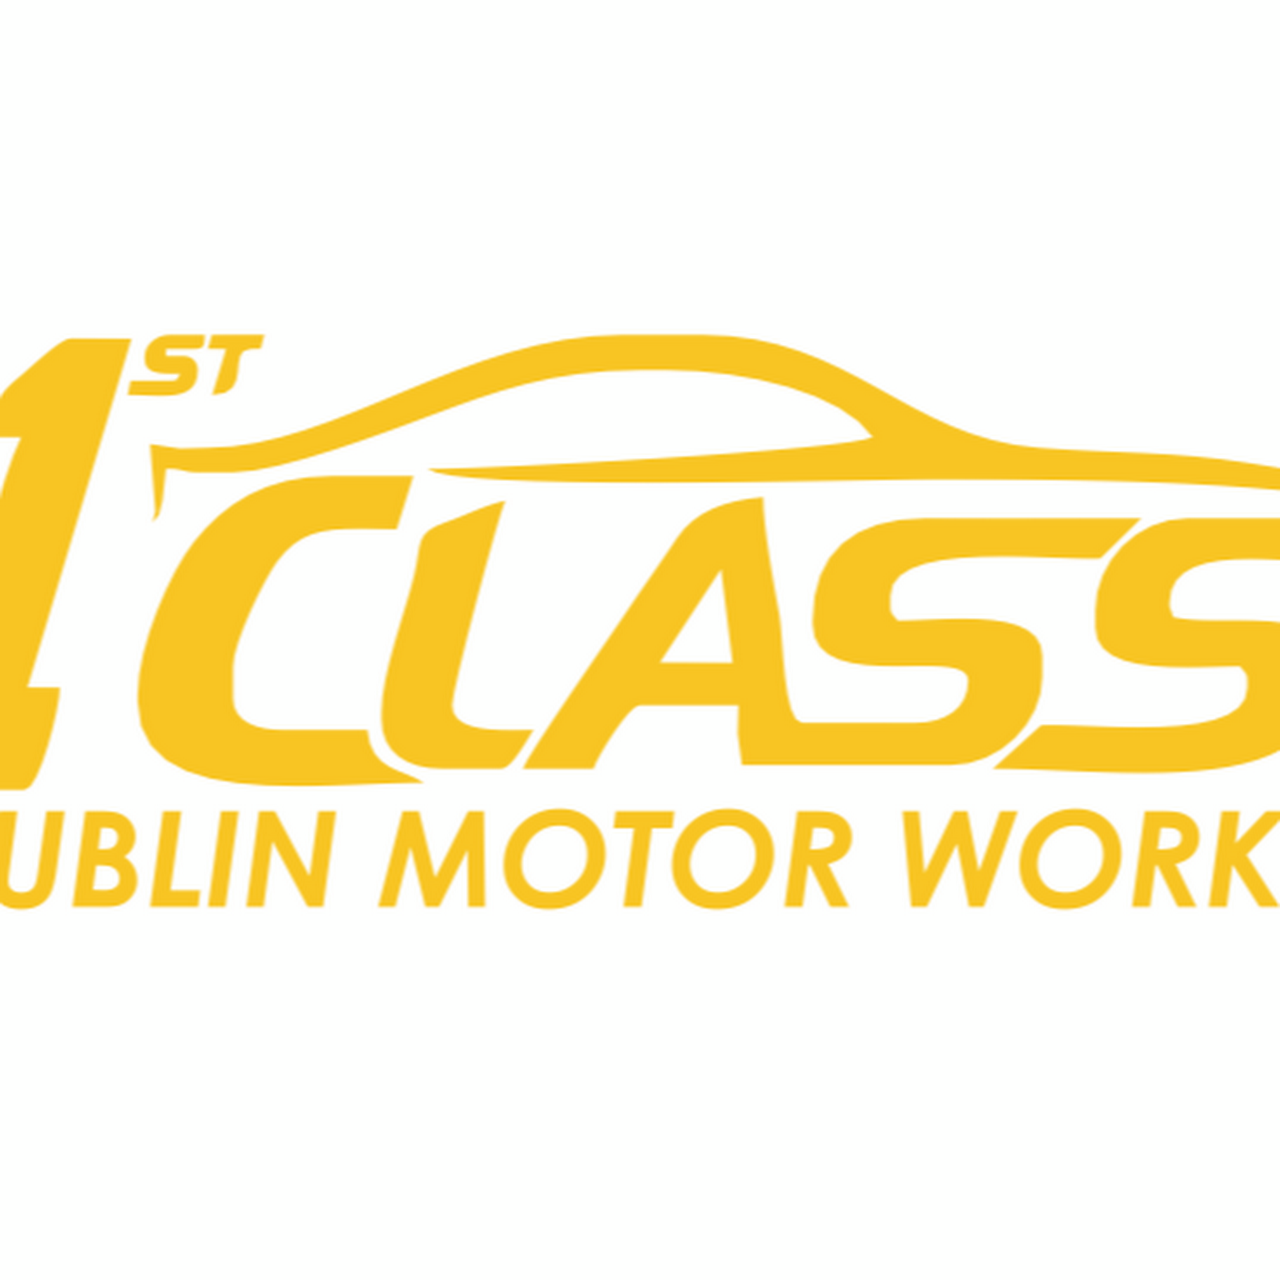 Logo for 1st Class Cars Dublin